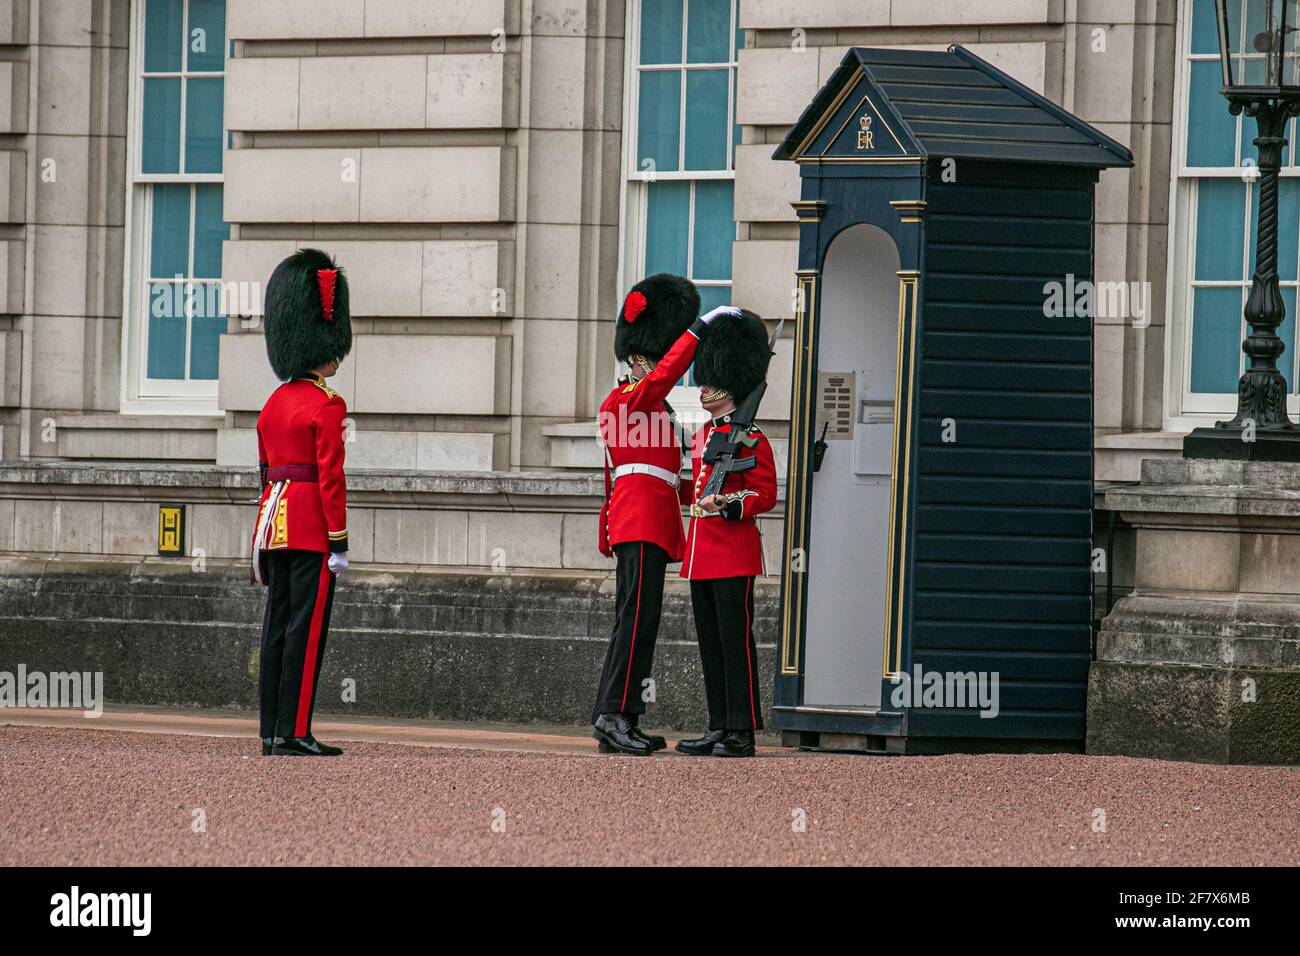 BUCKINGHAM PALACE LONDRES, ROYAUME-UNI 9 AVRIL 2021. Coldstream Guards inspectant la cour du palais de Buckingham un jour après le prince Philip, duc d'Édimbourg à l'âge de 99 ans, le 9 avril 2021 Credit amer ghazzal/Alay Live News Banque D'Images